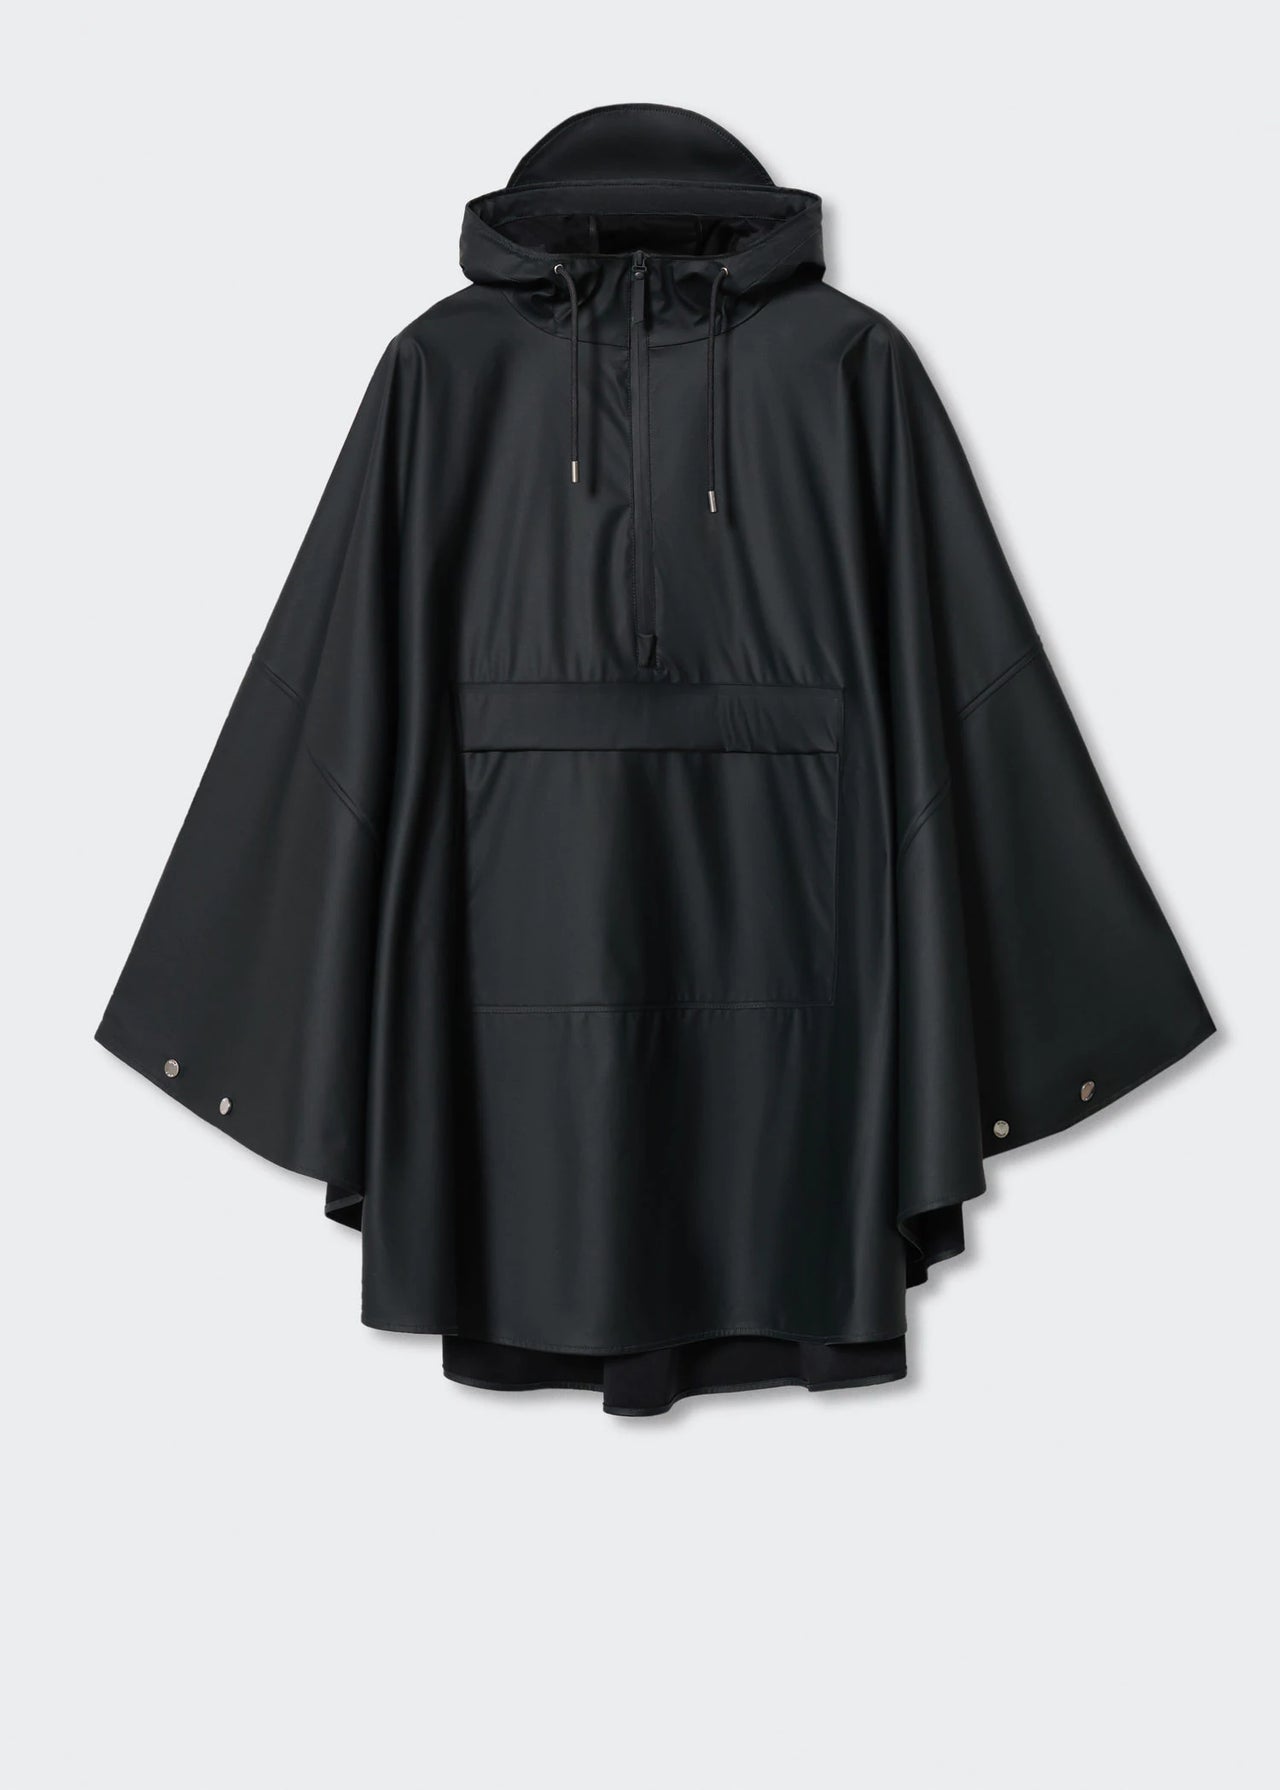 Packable raincoat